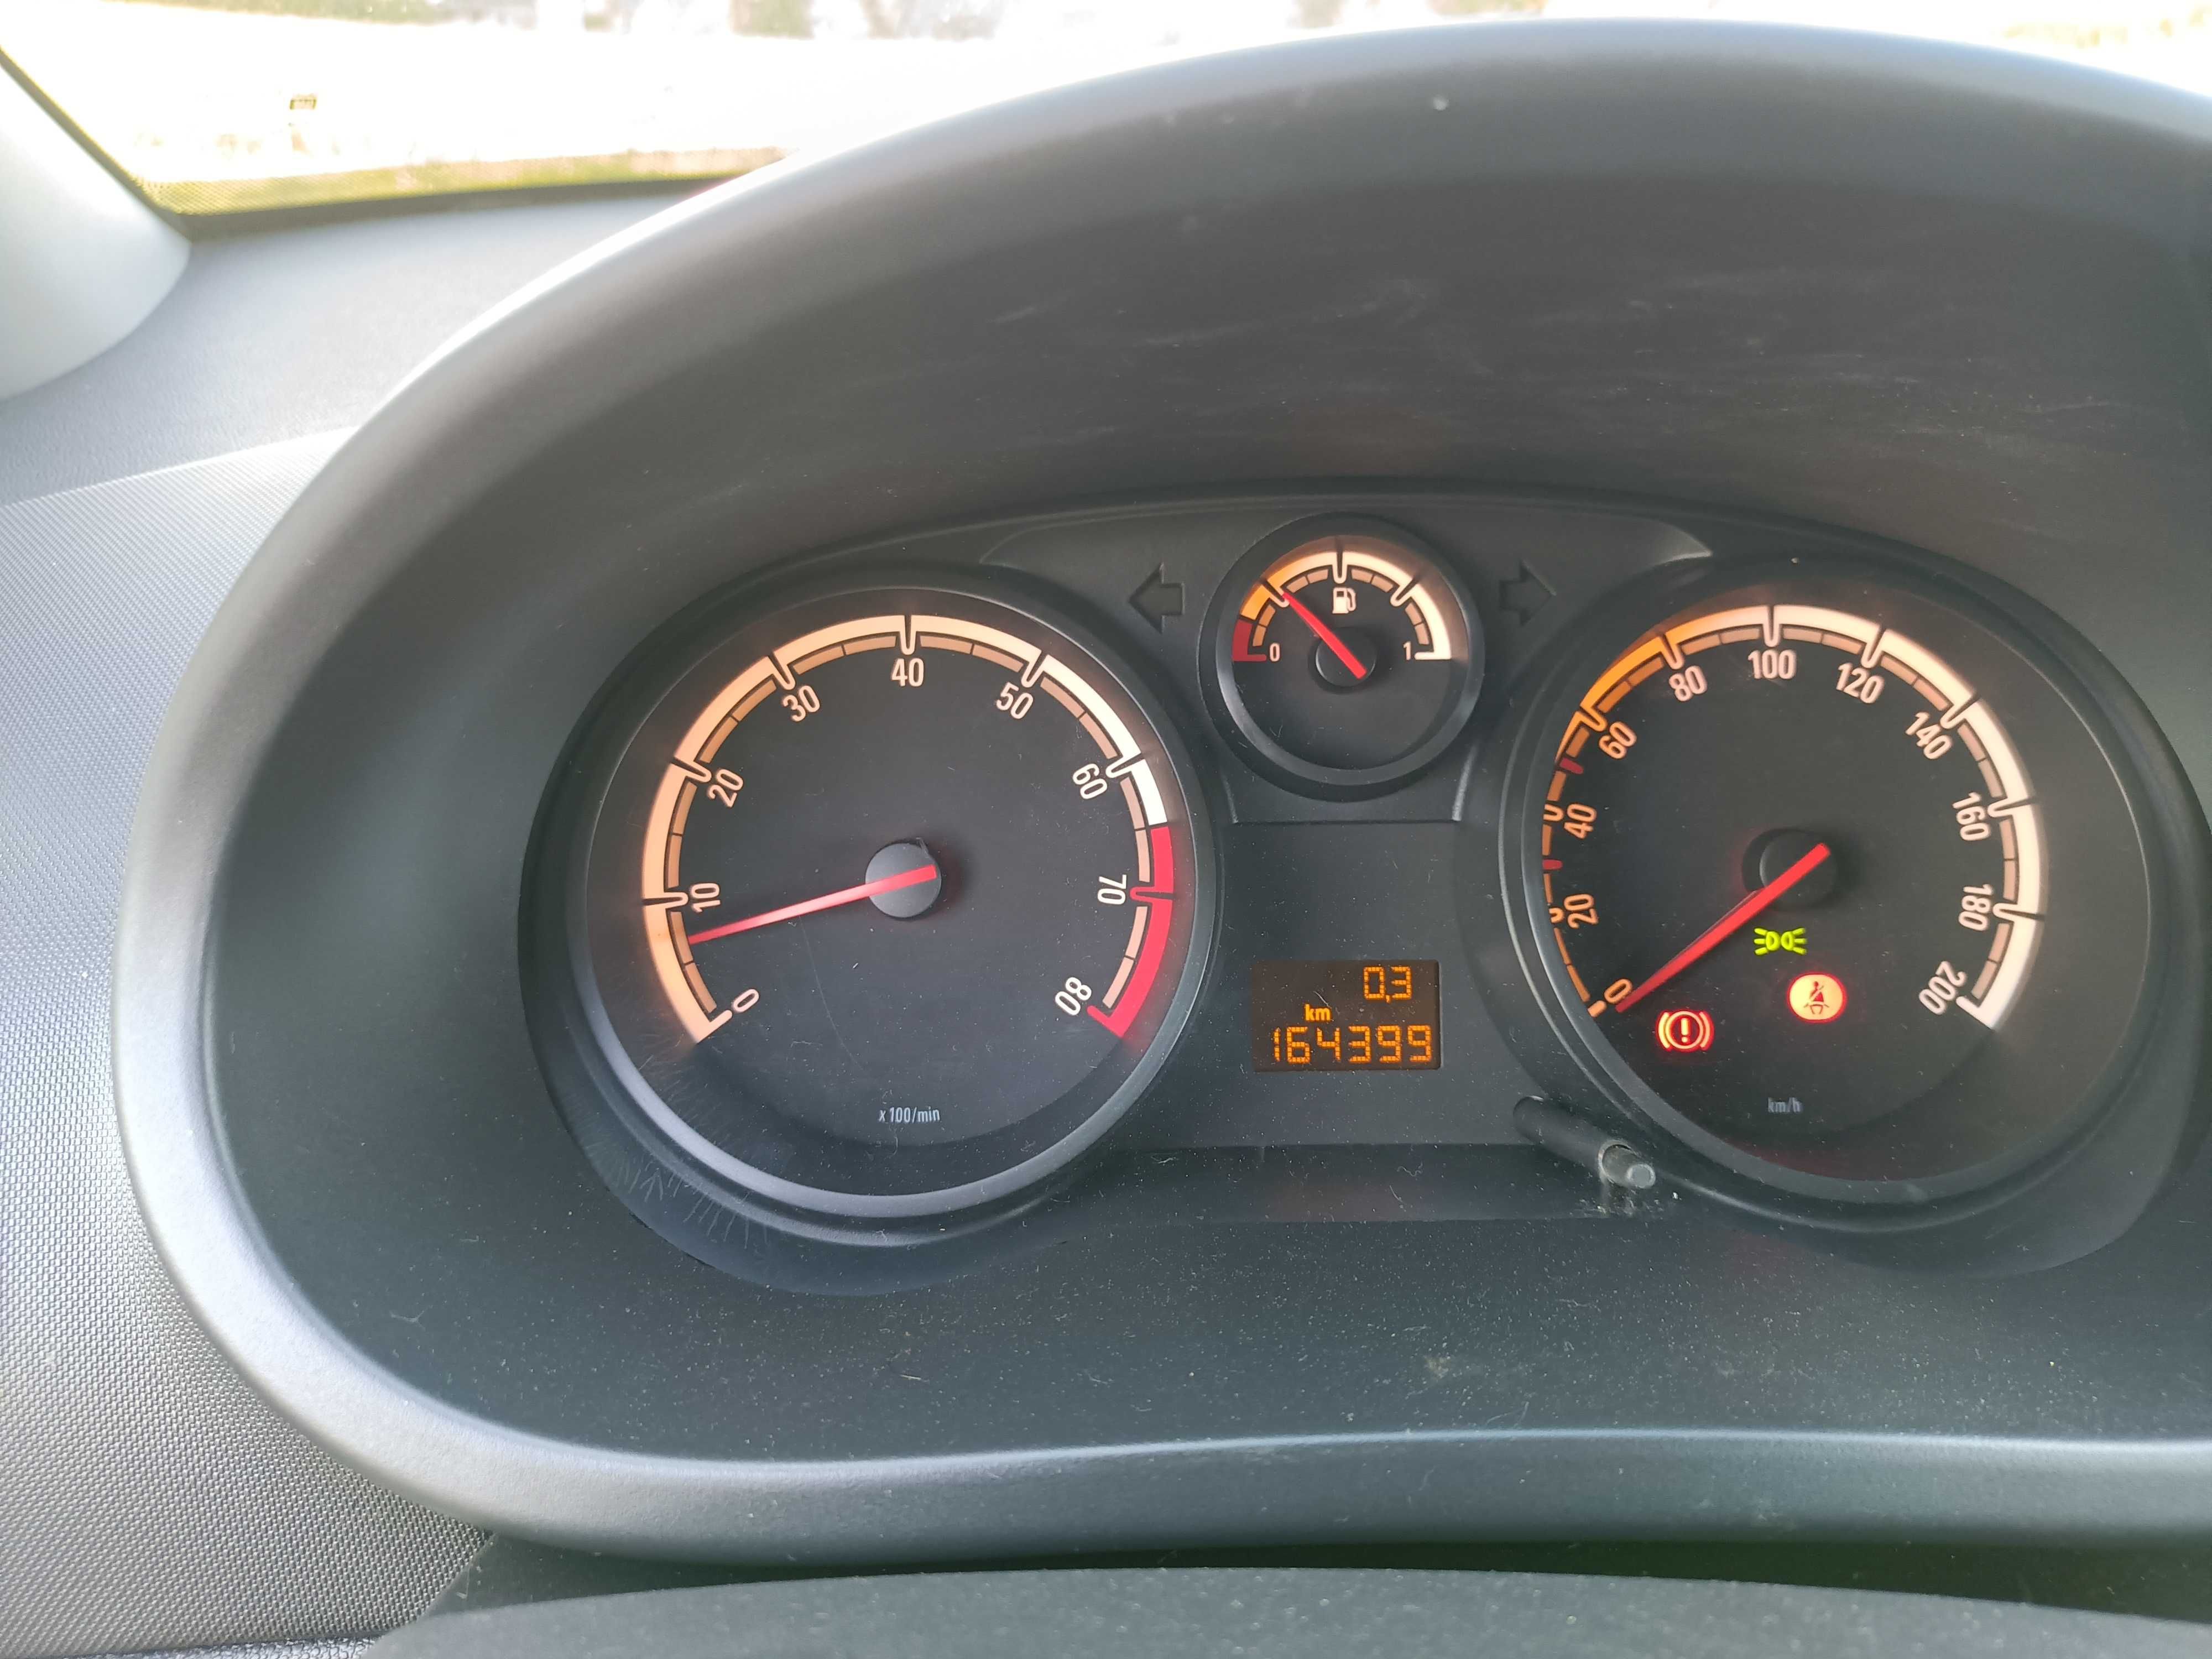 Opel Corsa D  2009 r, 1.2 benzyna klimatyzacja,wspomaganie tanio